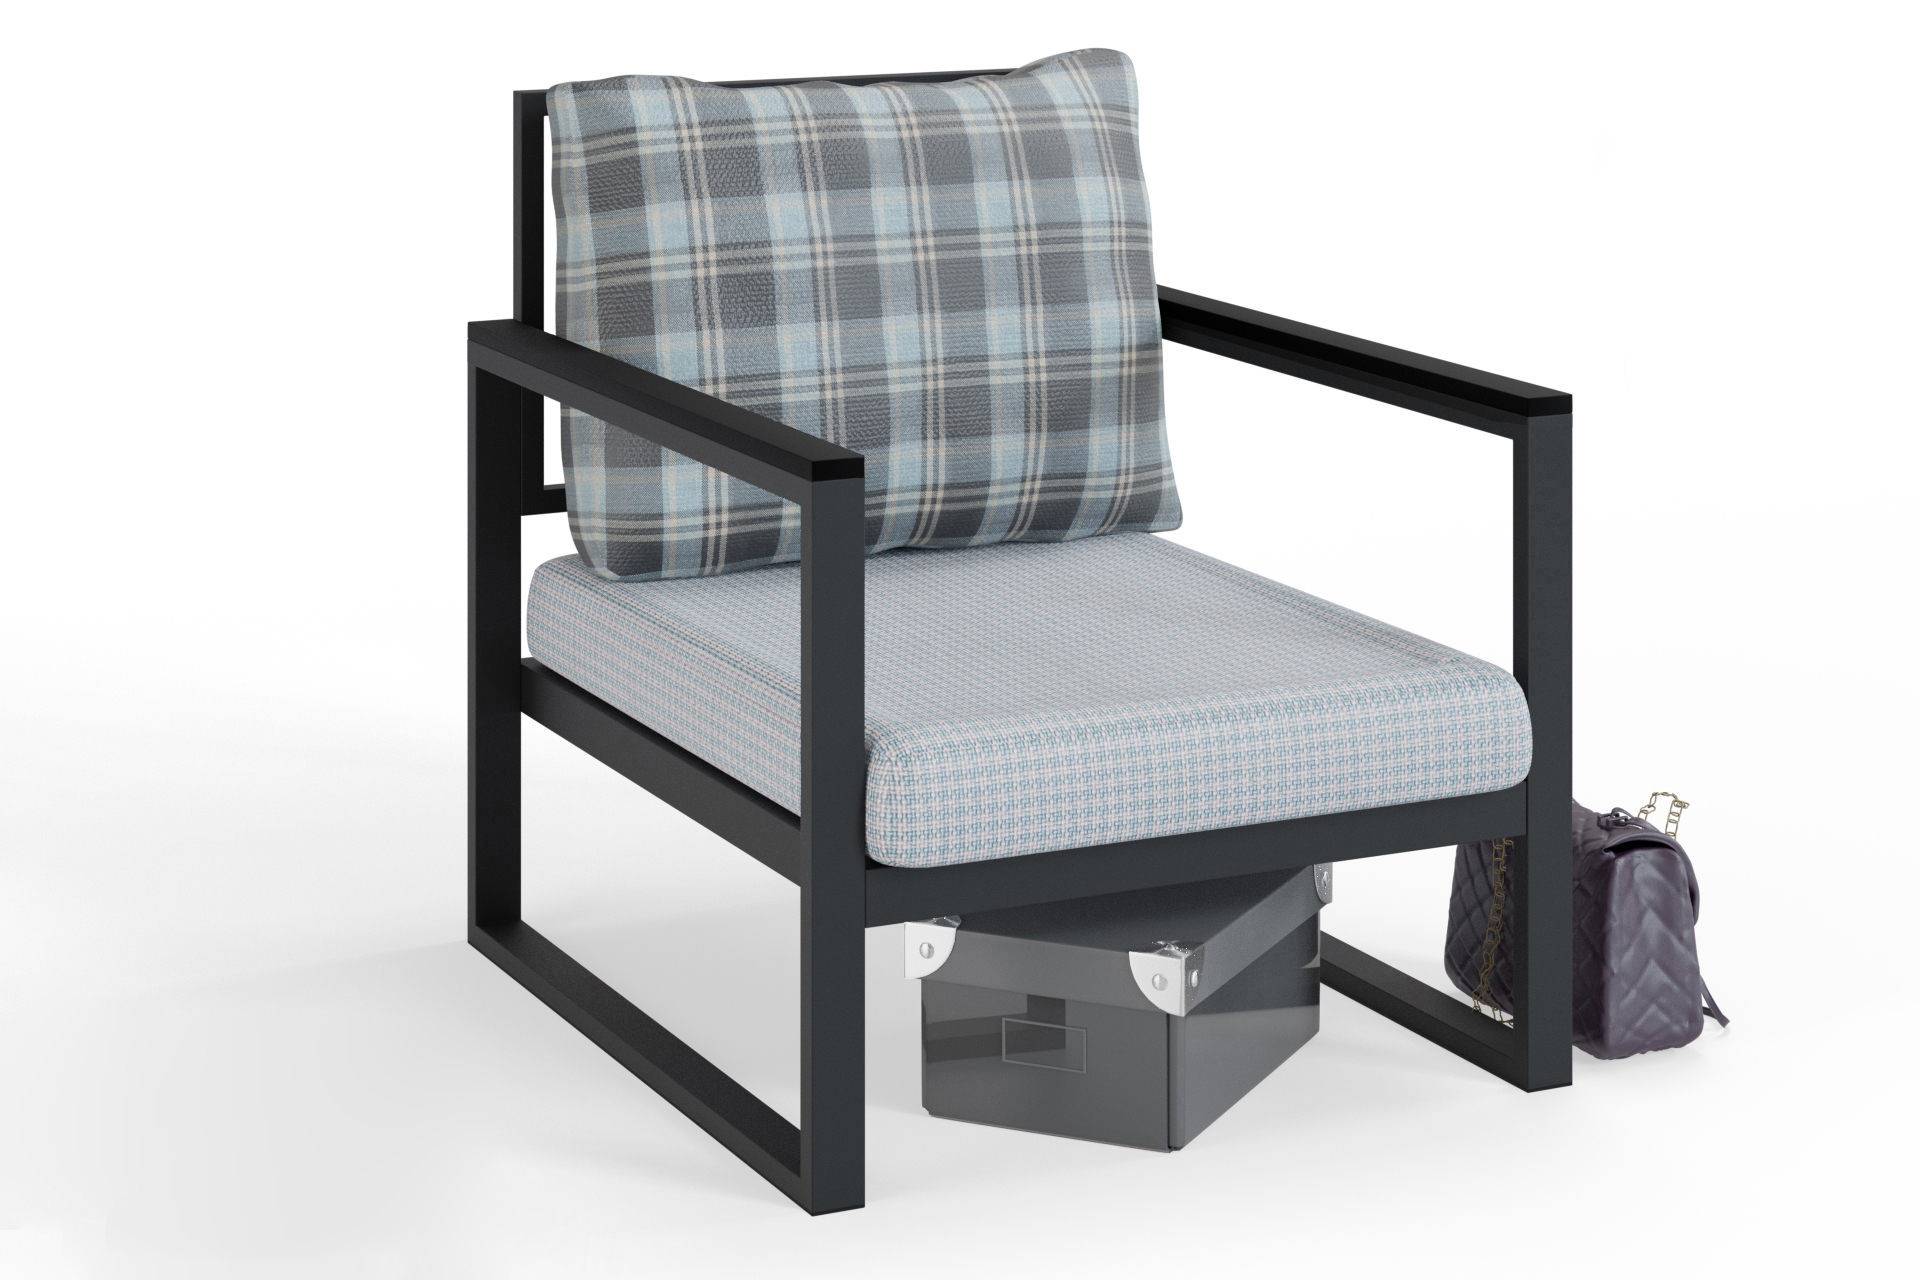 Eigentijdse fauteuil Omer van zwart metaal en stof, zitting met lichtblauw houndstoothpatroon en kussen met lichtblauw en grijs ruitmotief